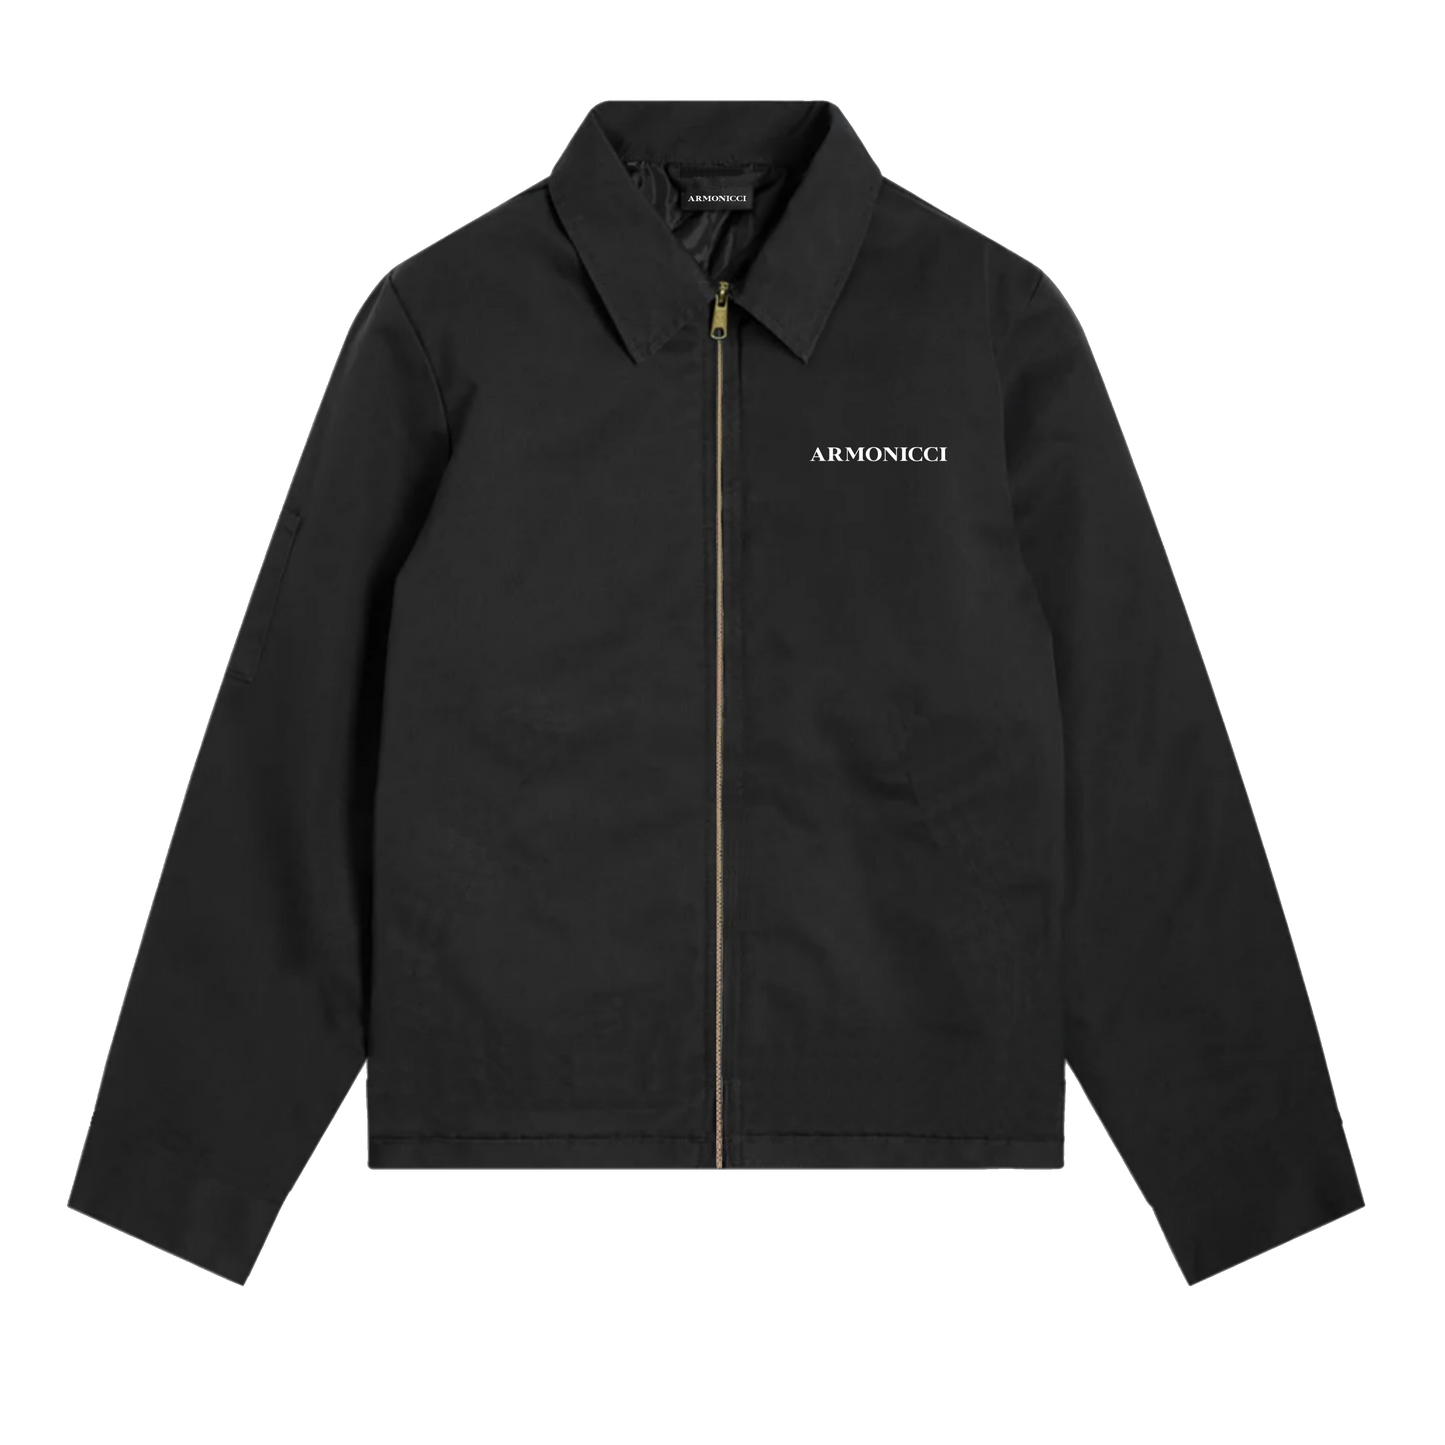 Black Workwear Jacket